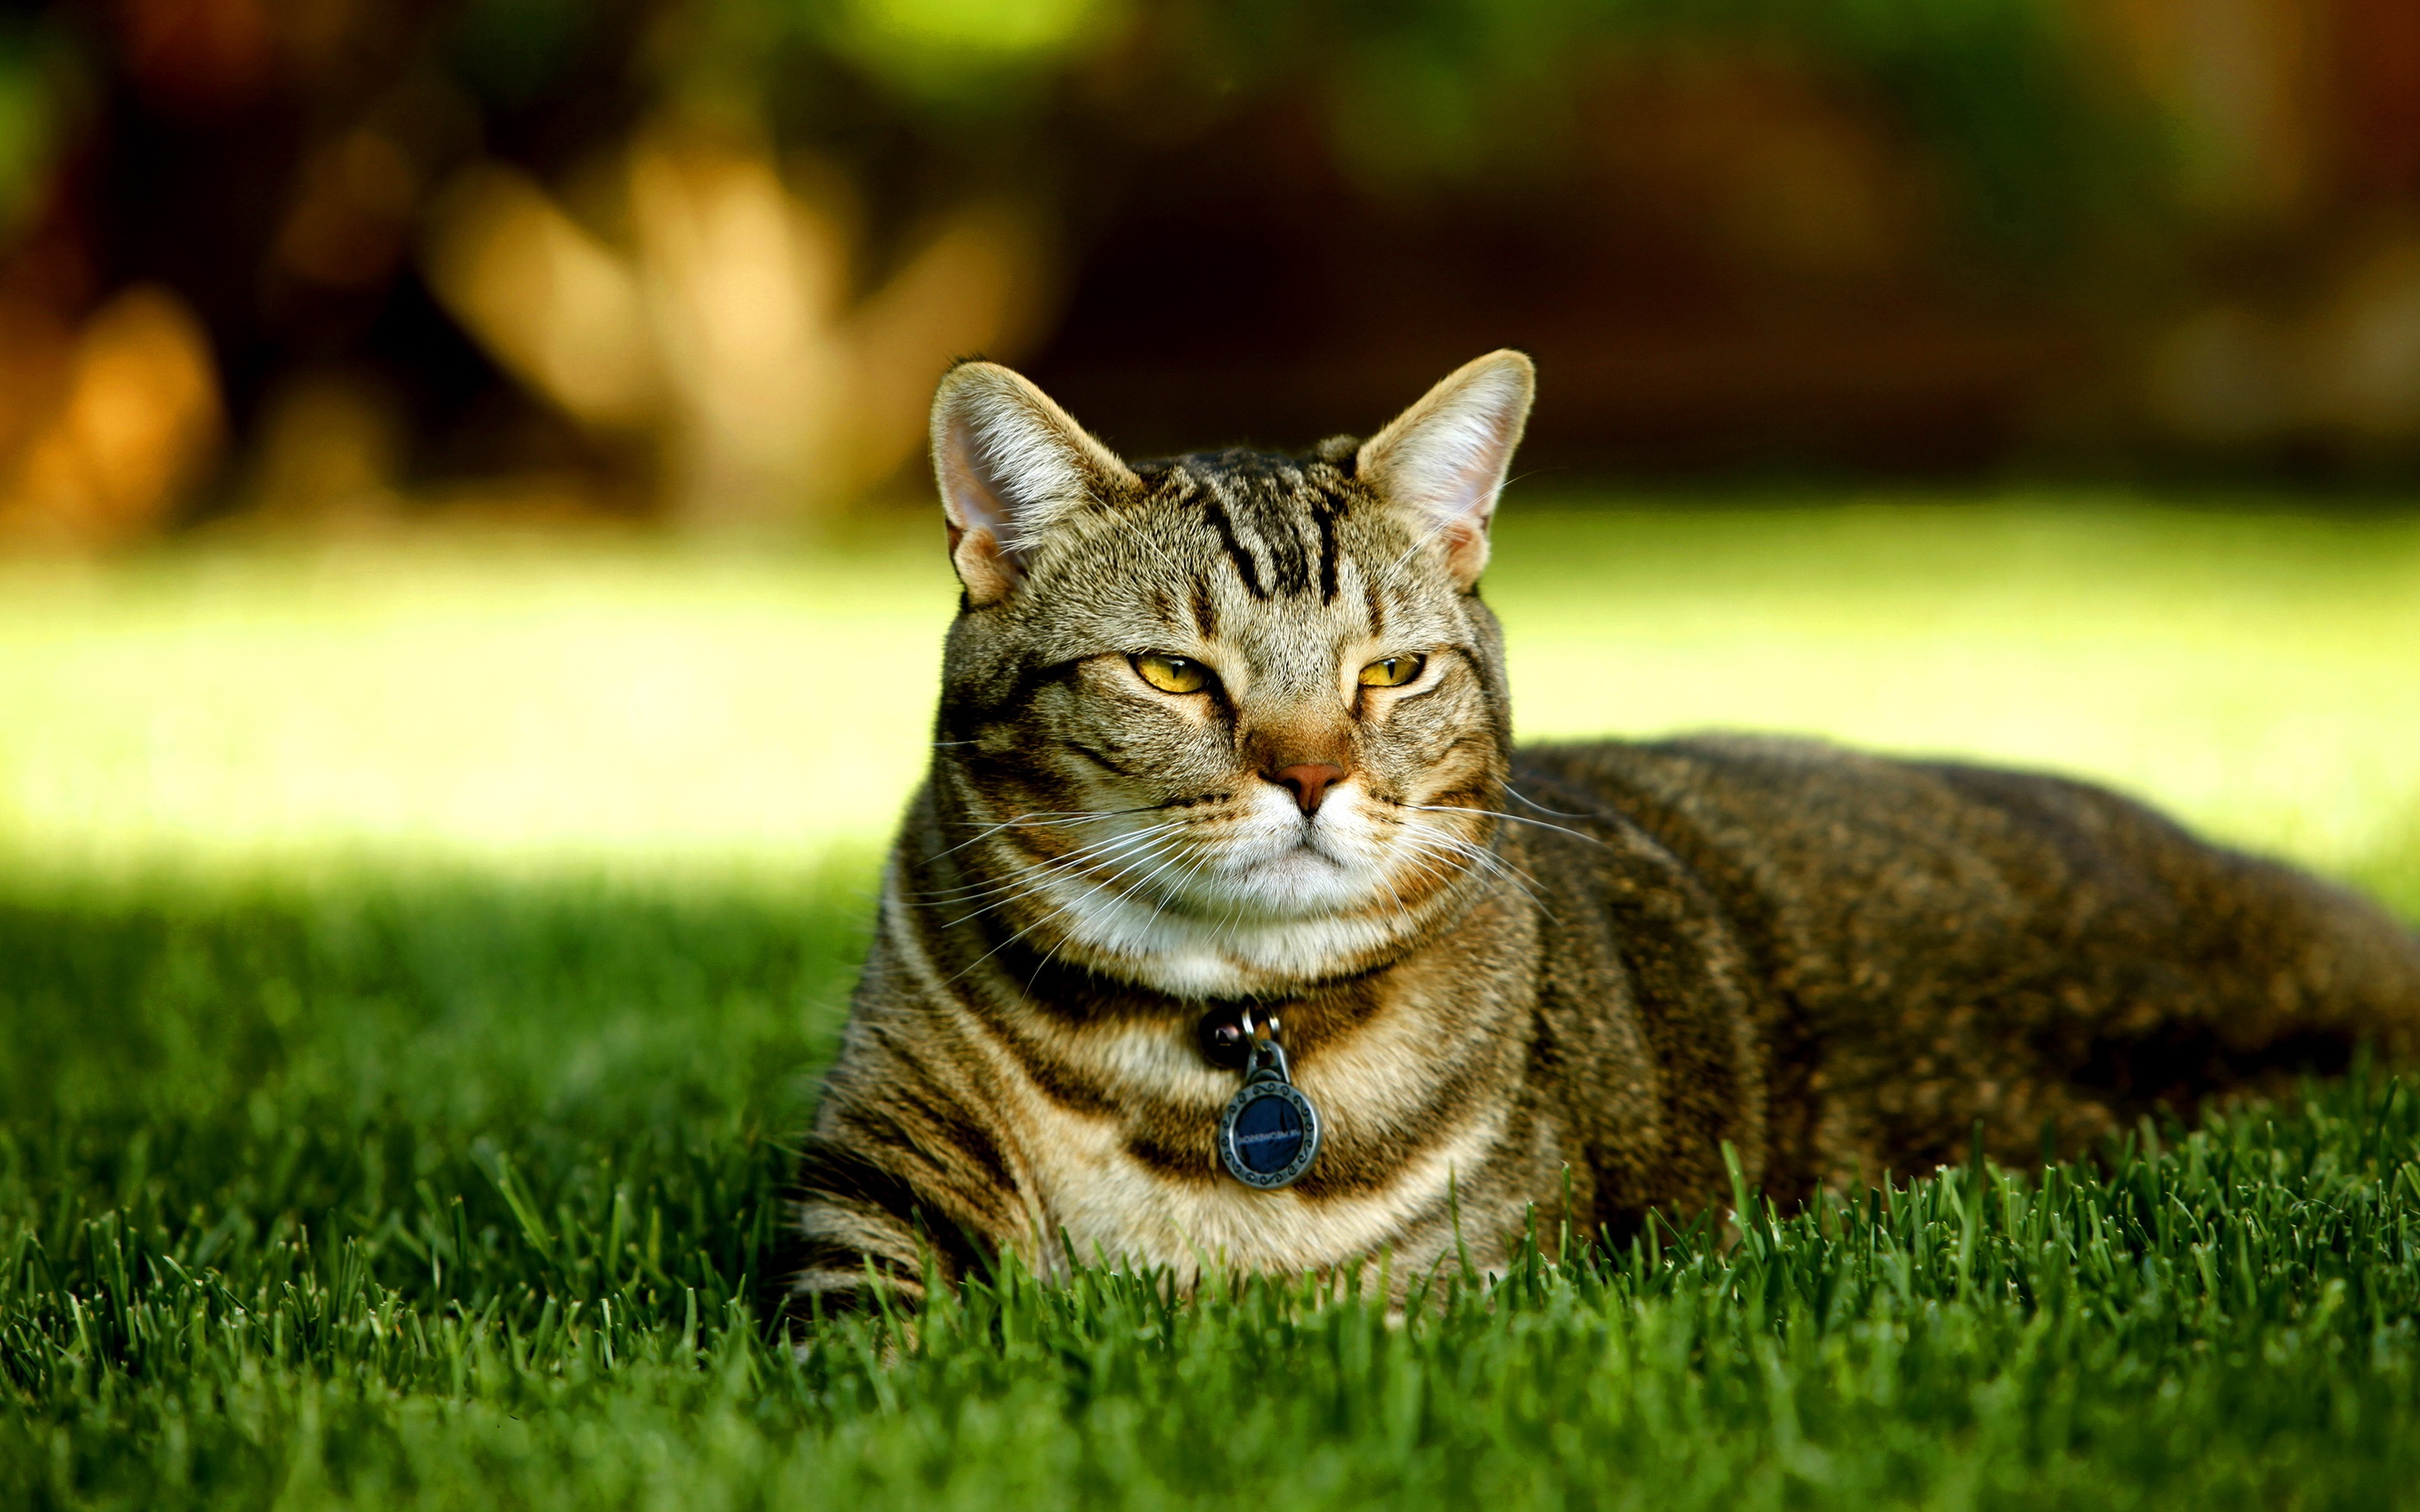 Cat in lawn